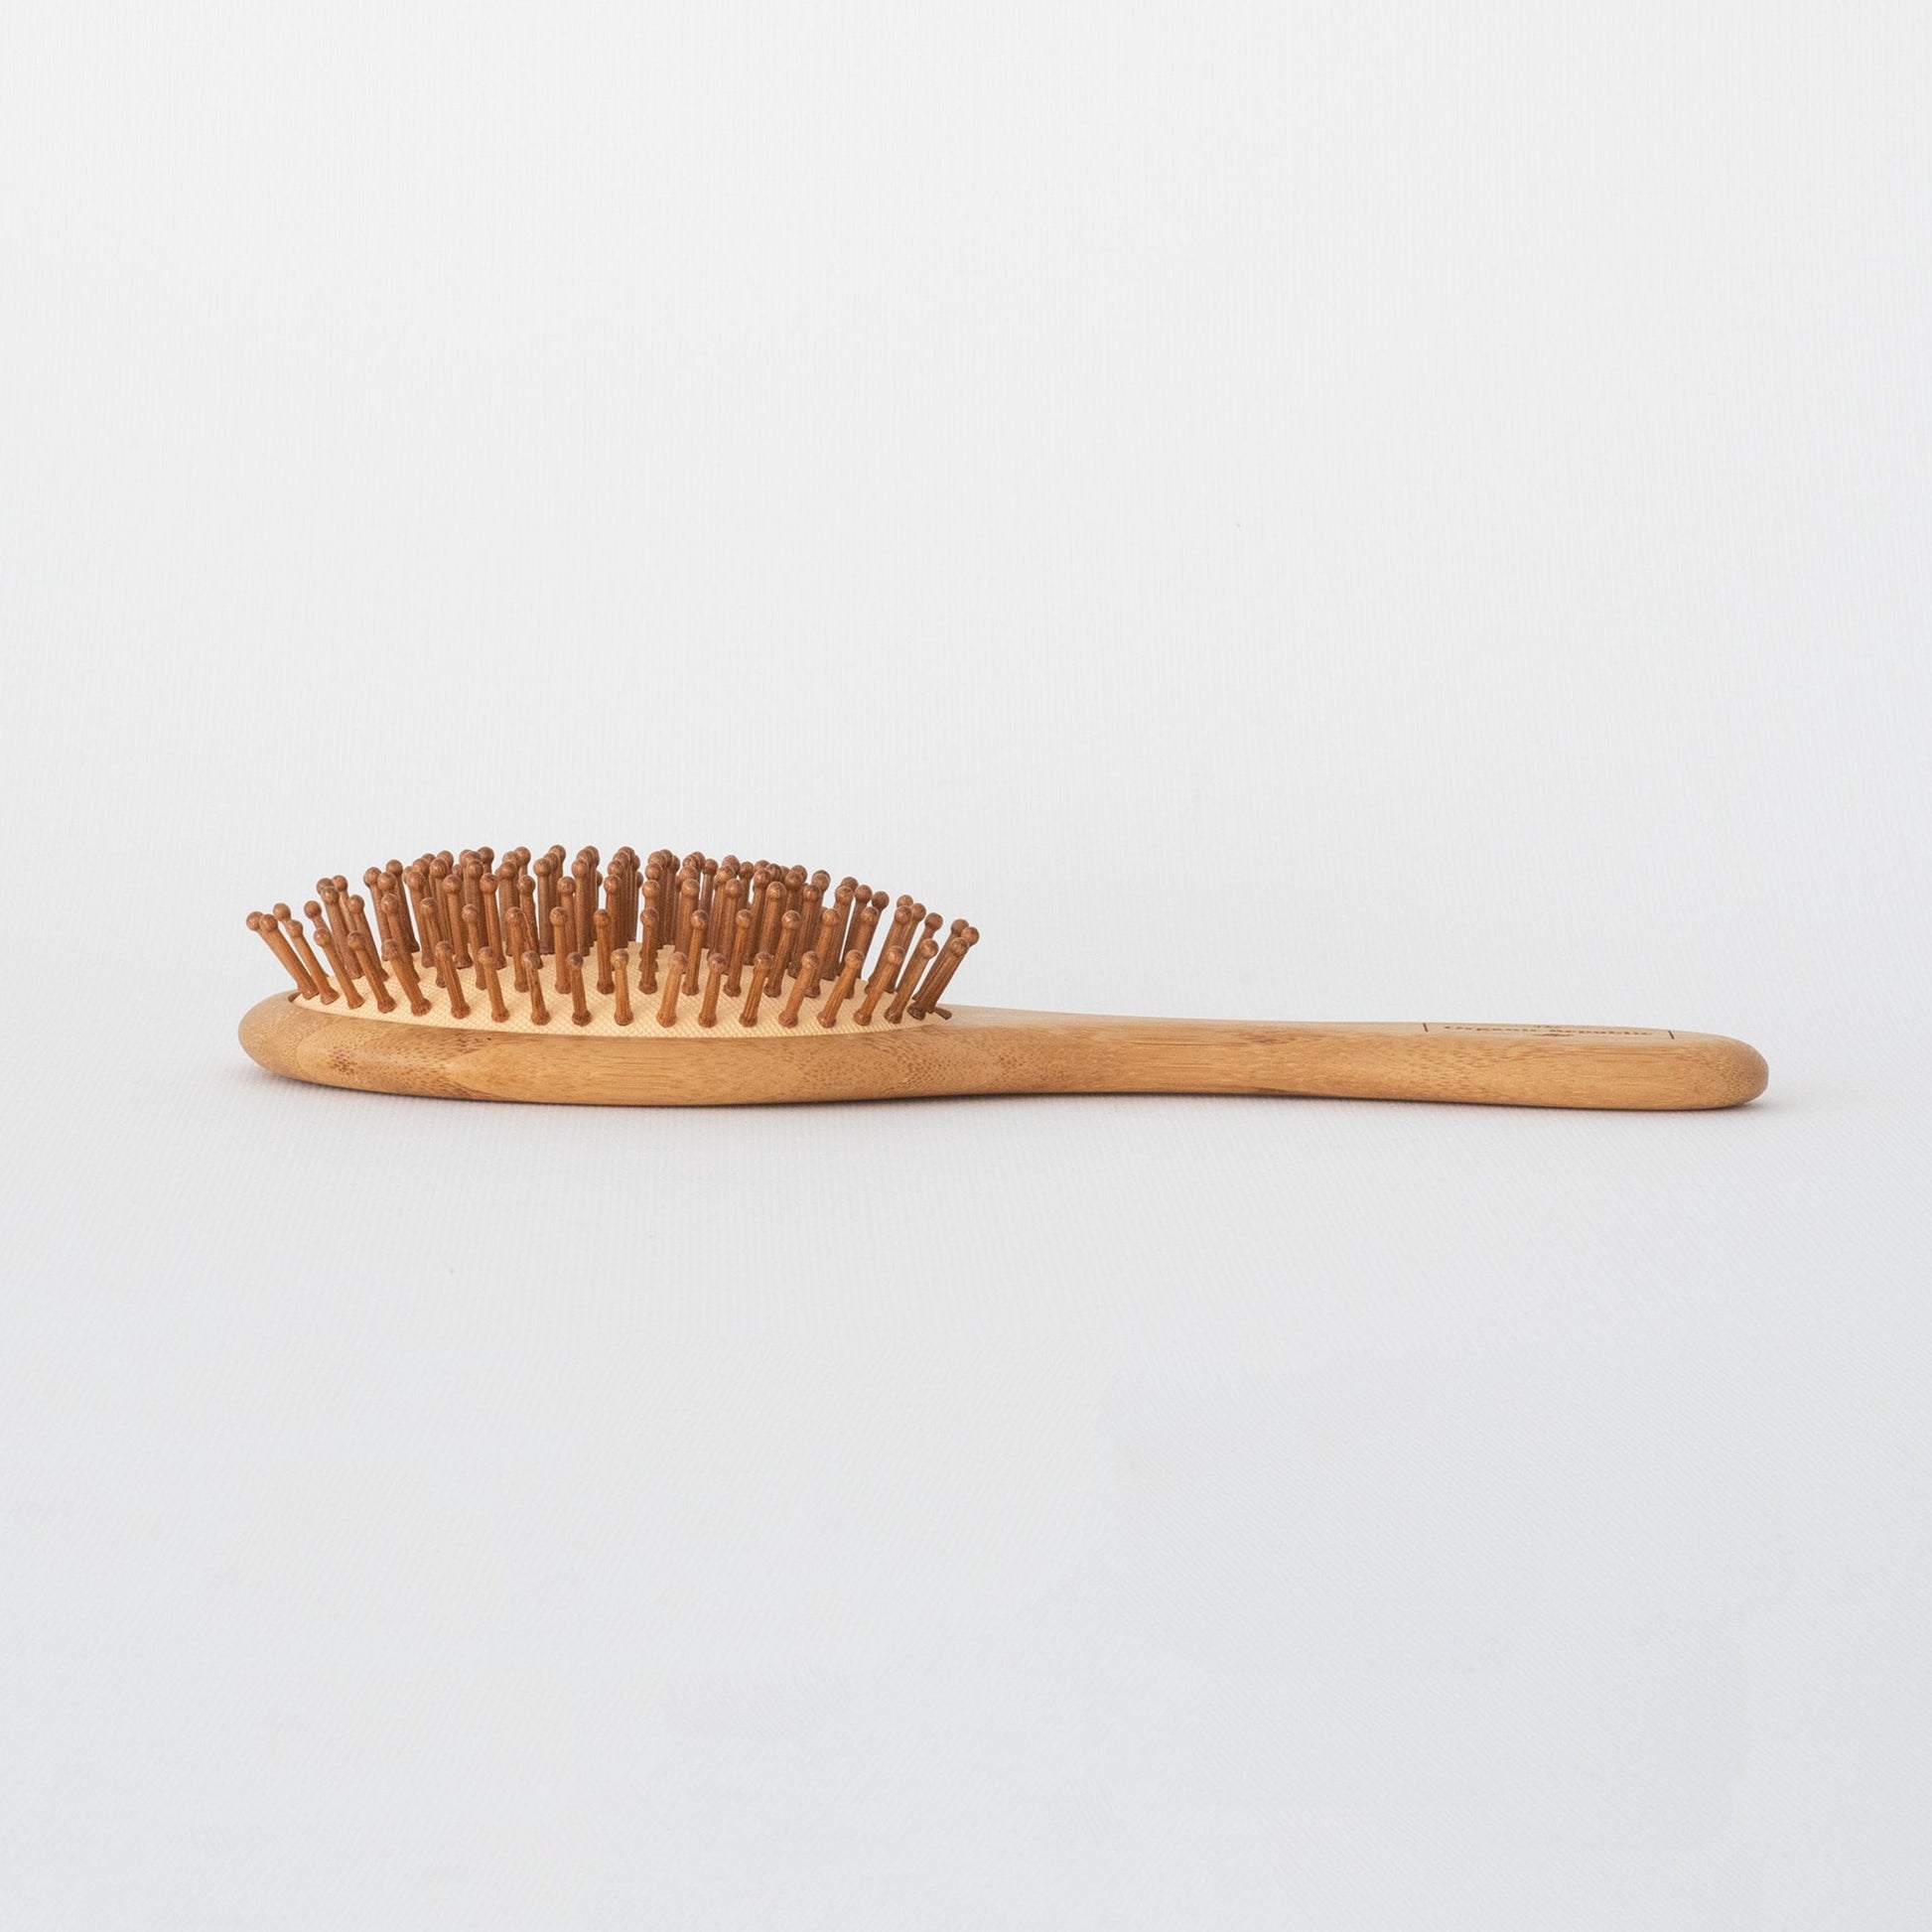 Cepillo de Pelo en Bambú que estimula el crecimiento, no genera